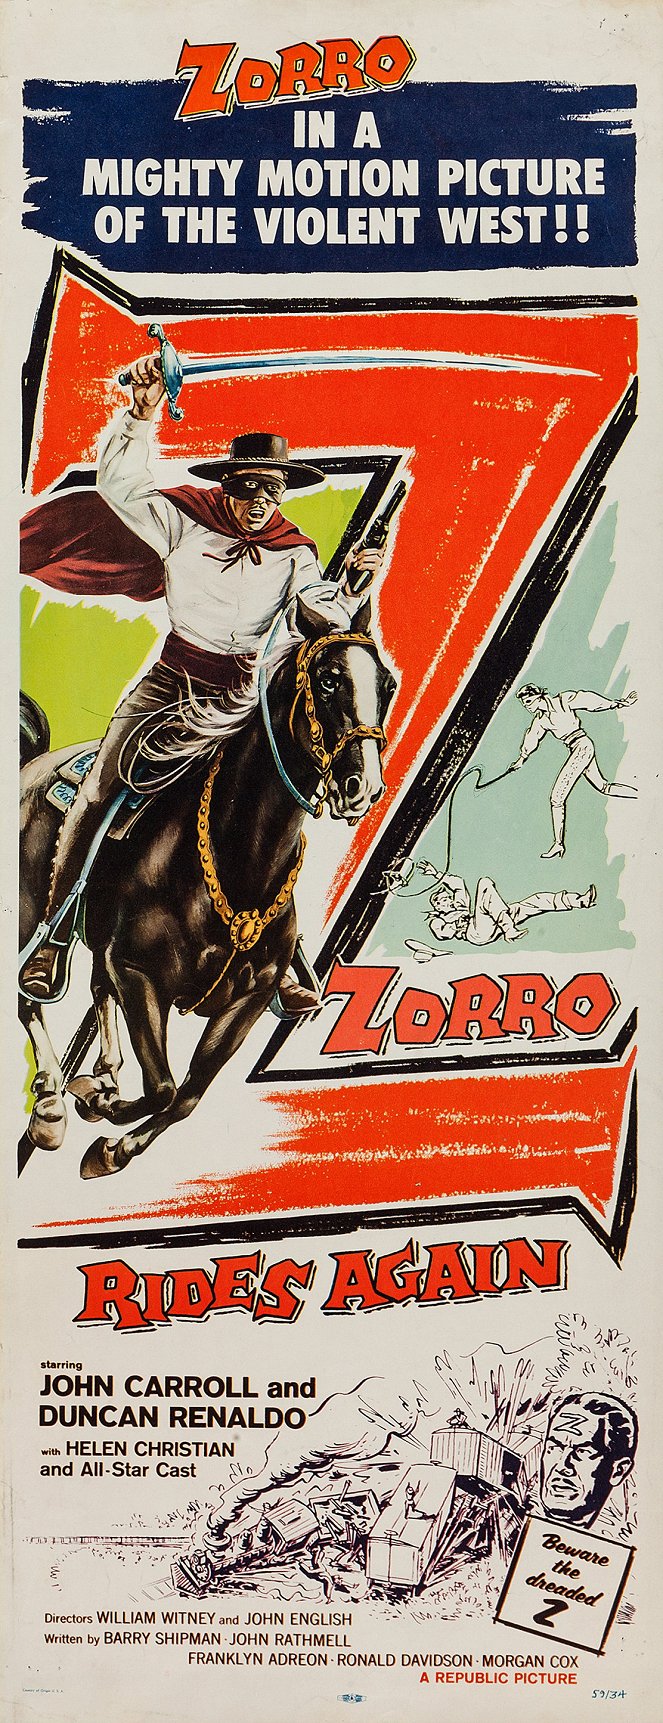 Le Retour de Zorro - Affiches